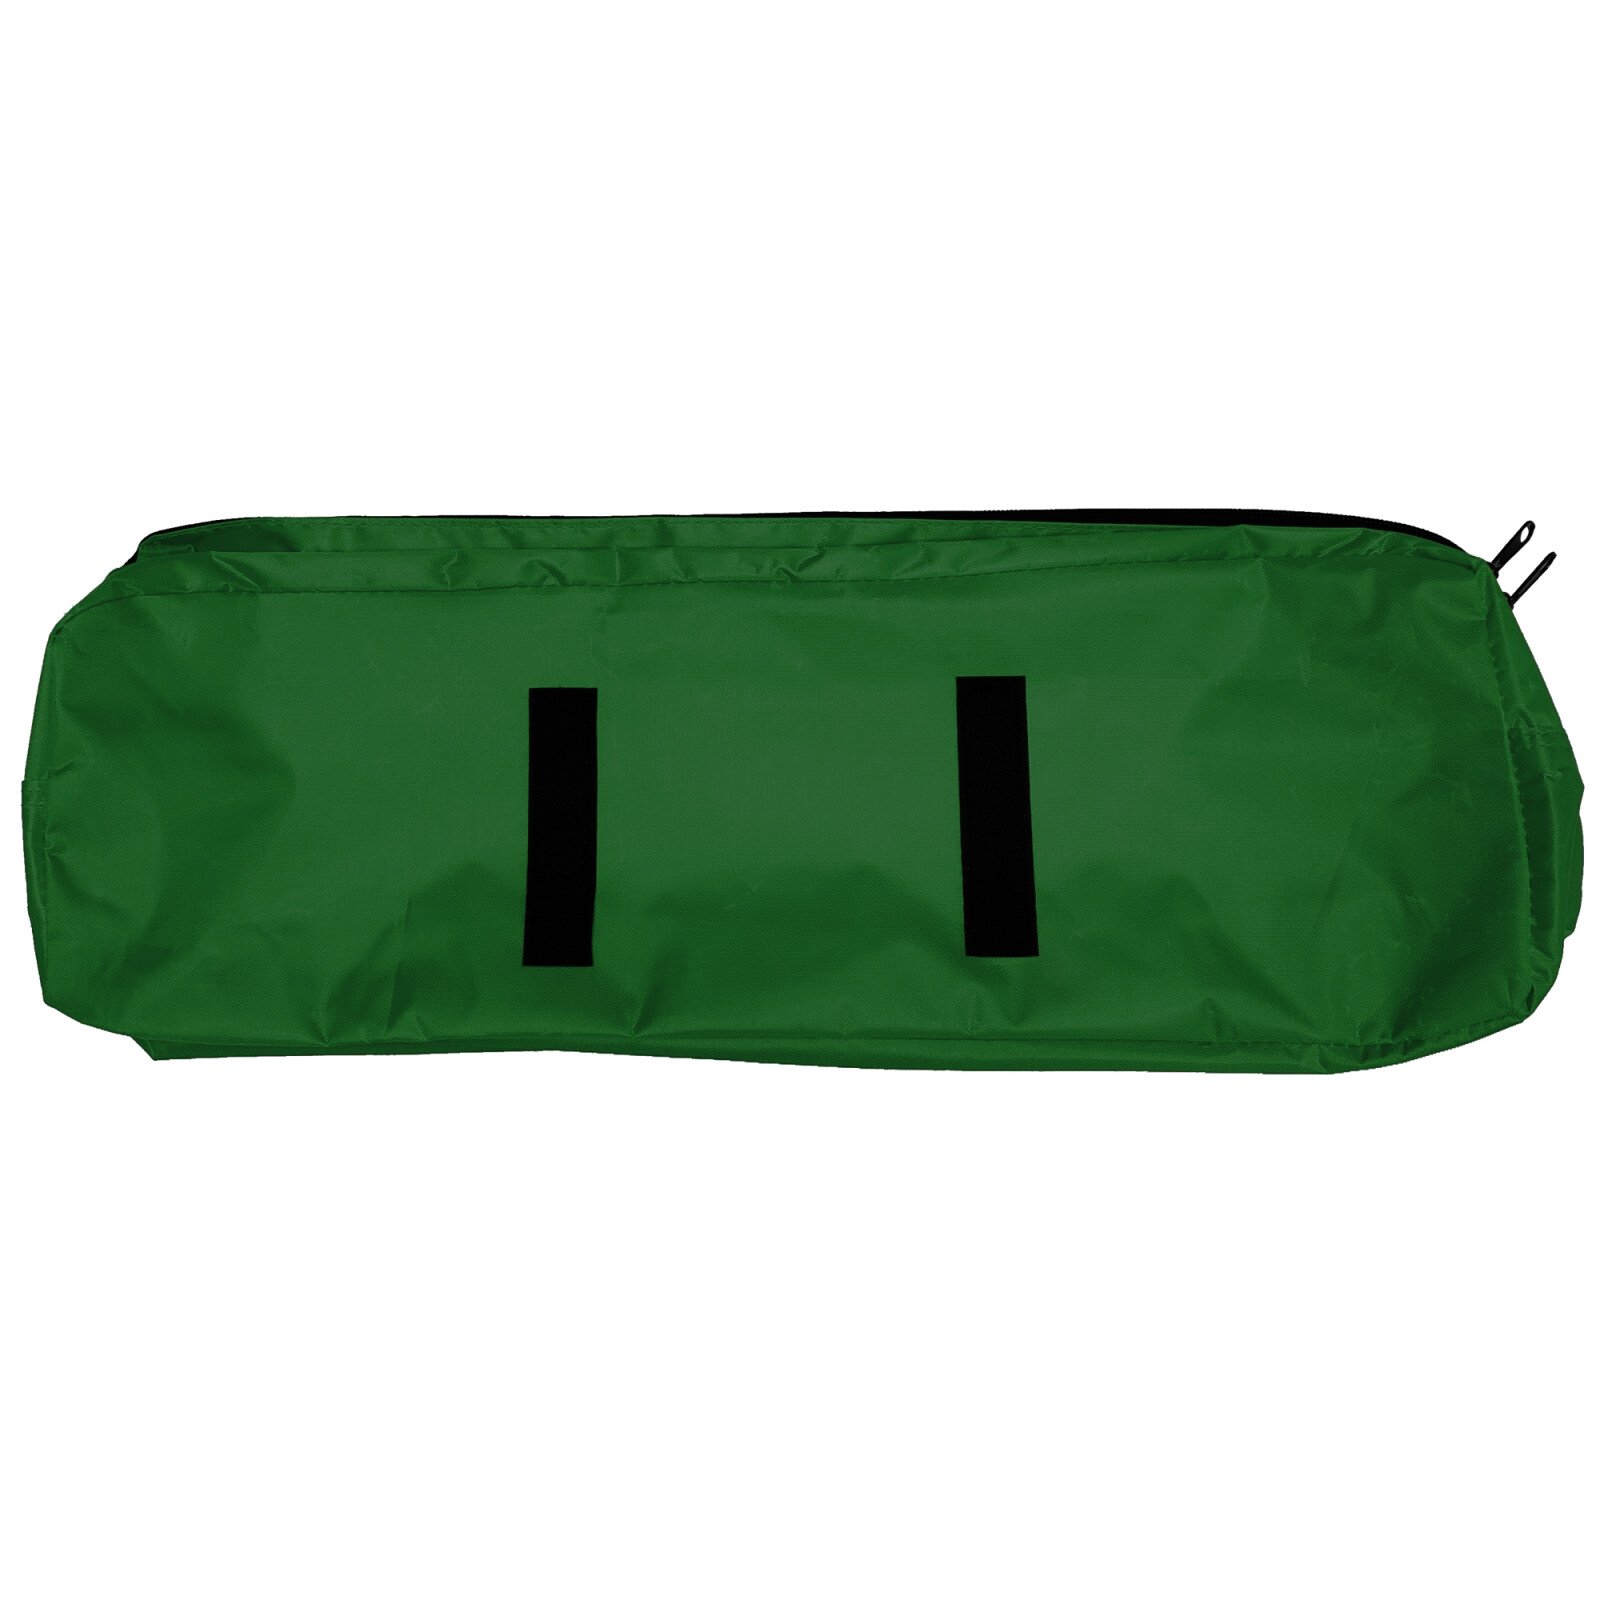 Cridem rendszerező táska - Zöld/Fekete thumb